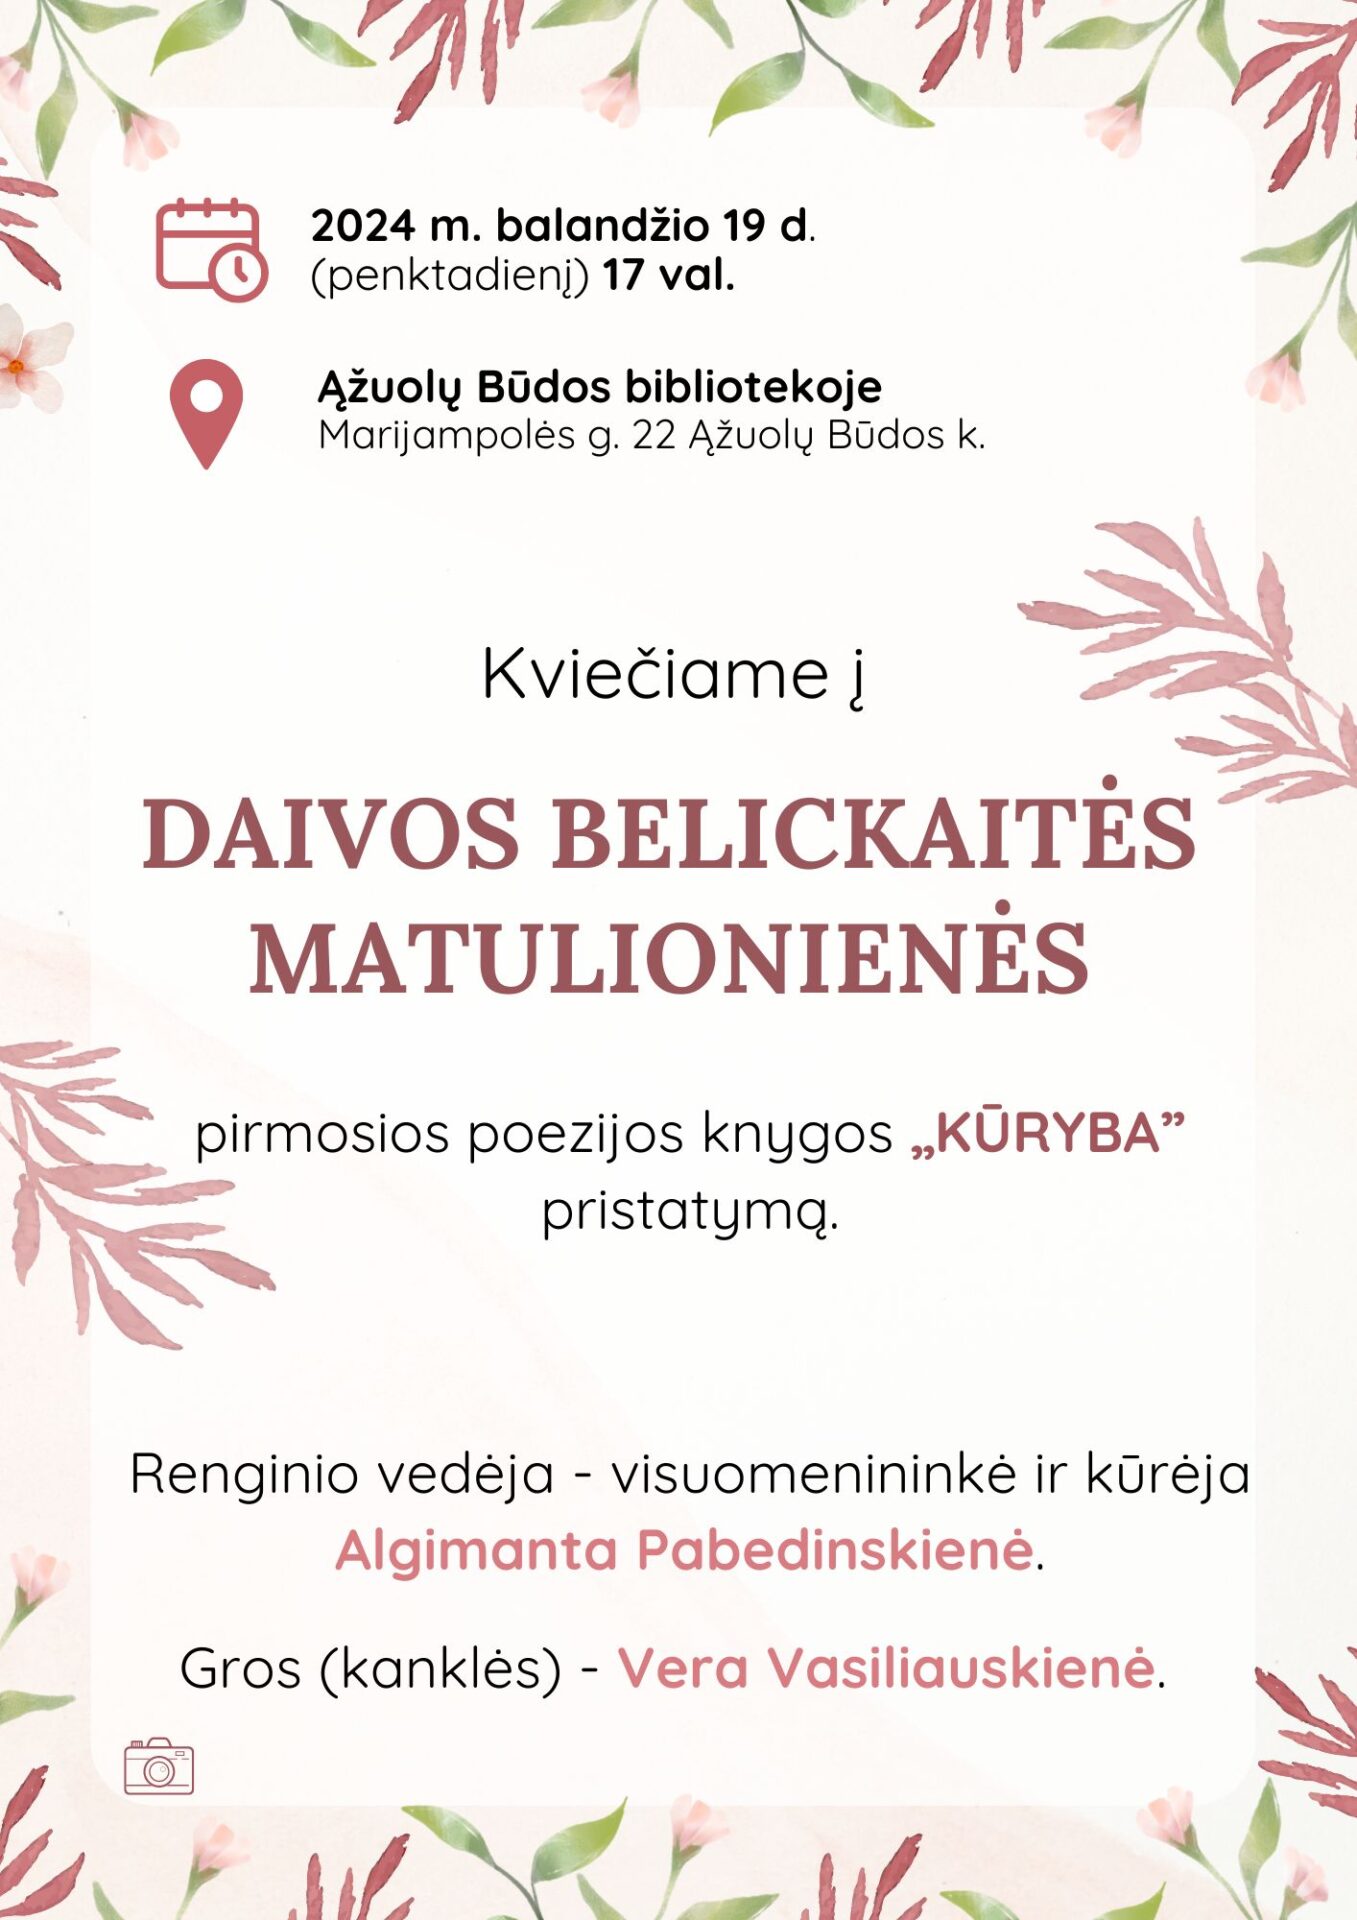 Daivos Belickaitės Matulionienės knygos pristatymas